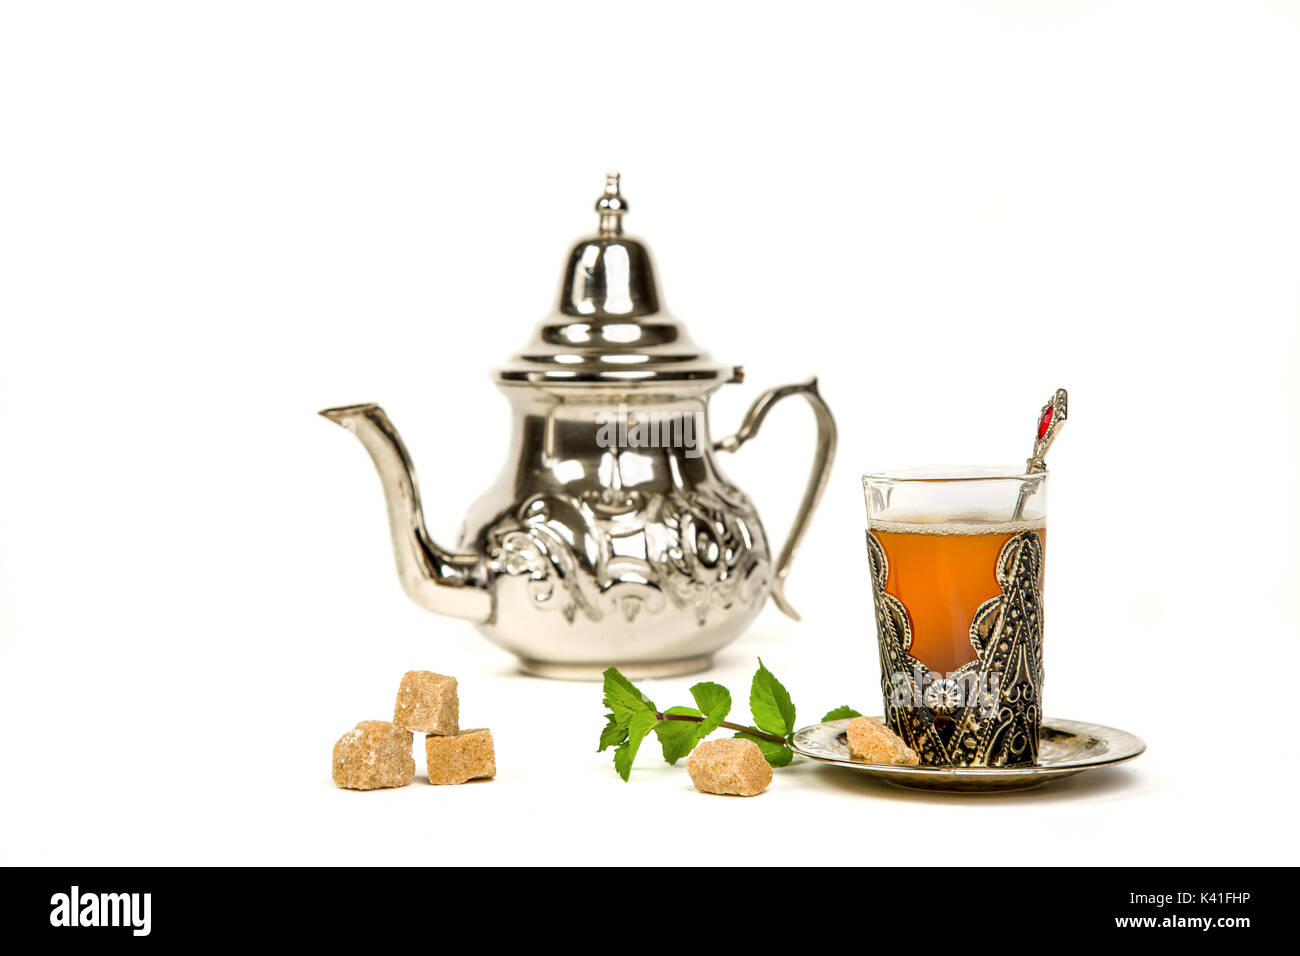 Vrai thé à la menthe marocain dans la coupe originale et une théière sur le fond blanc Banque D'Images